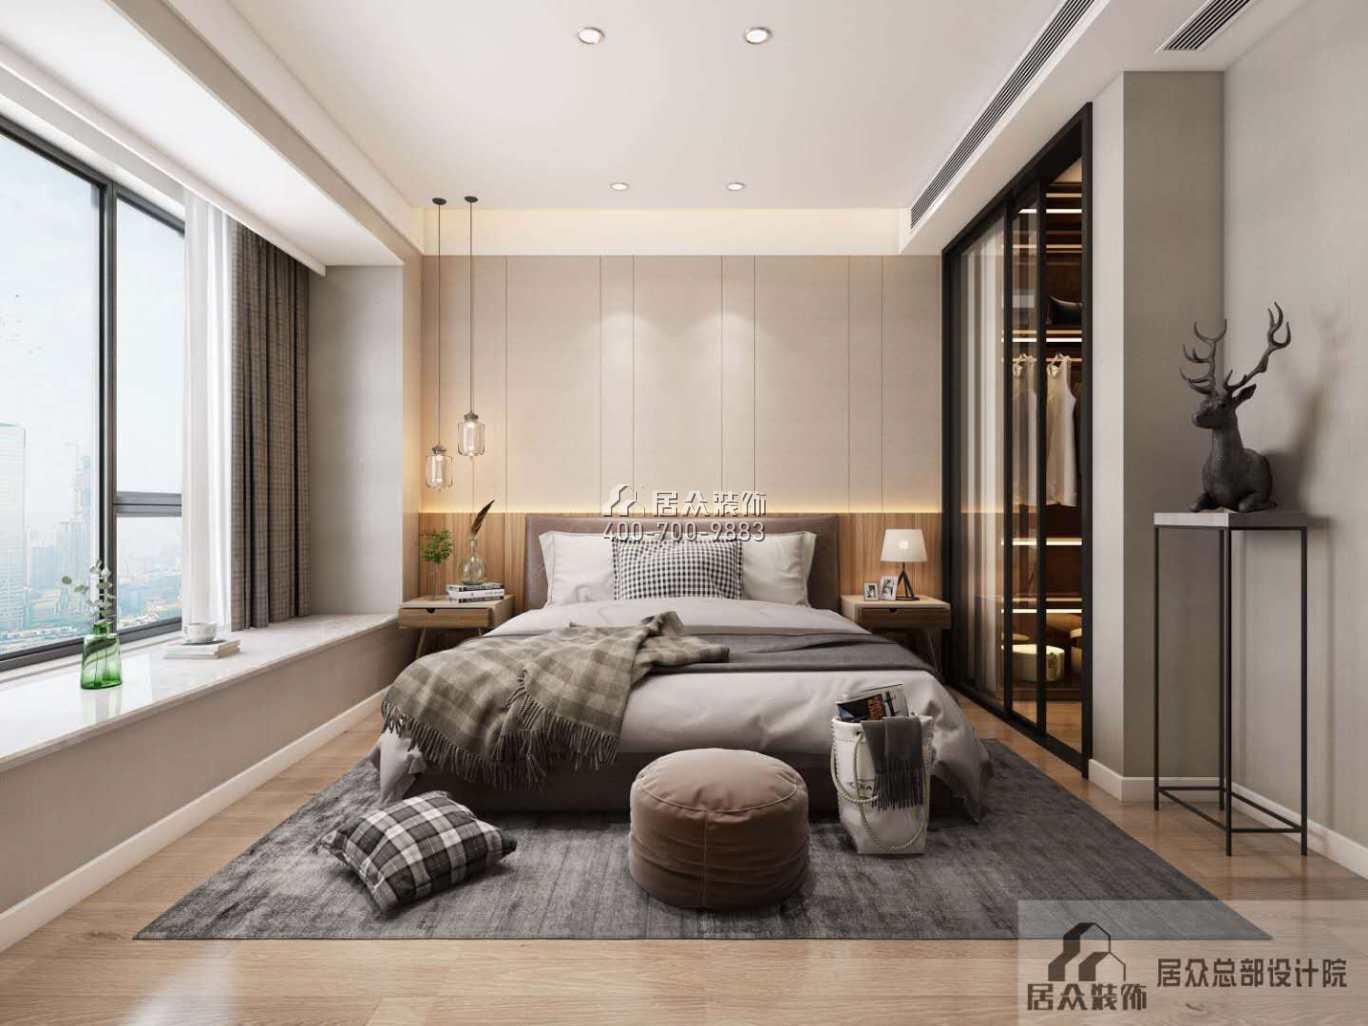 银湖蓝山润园二期120平方米现代简约风格平层户型卧室装修效果图